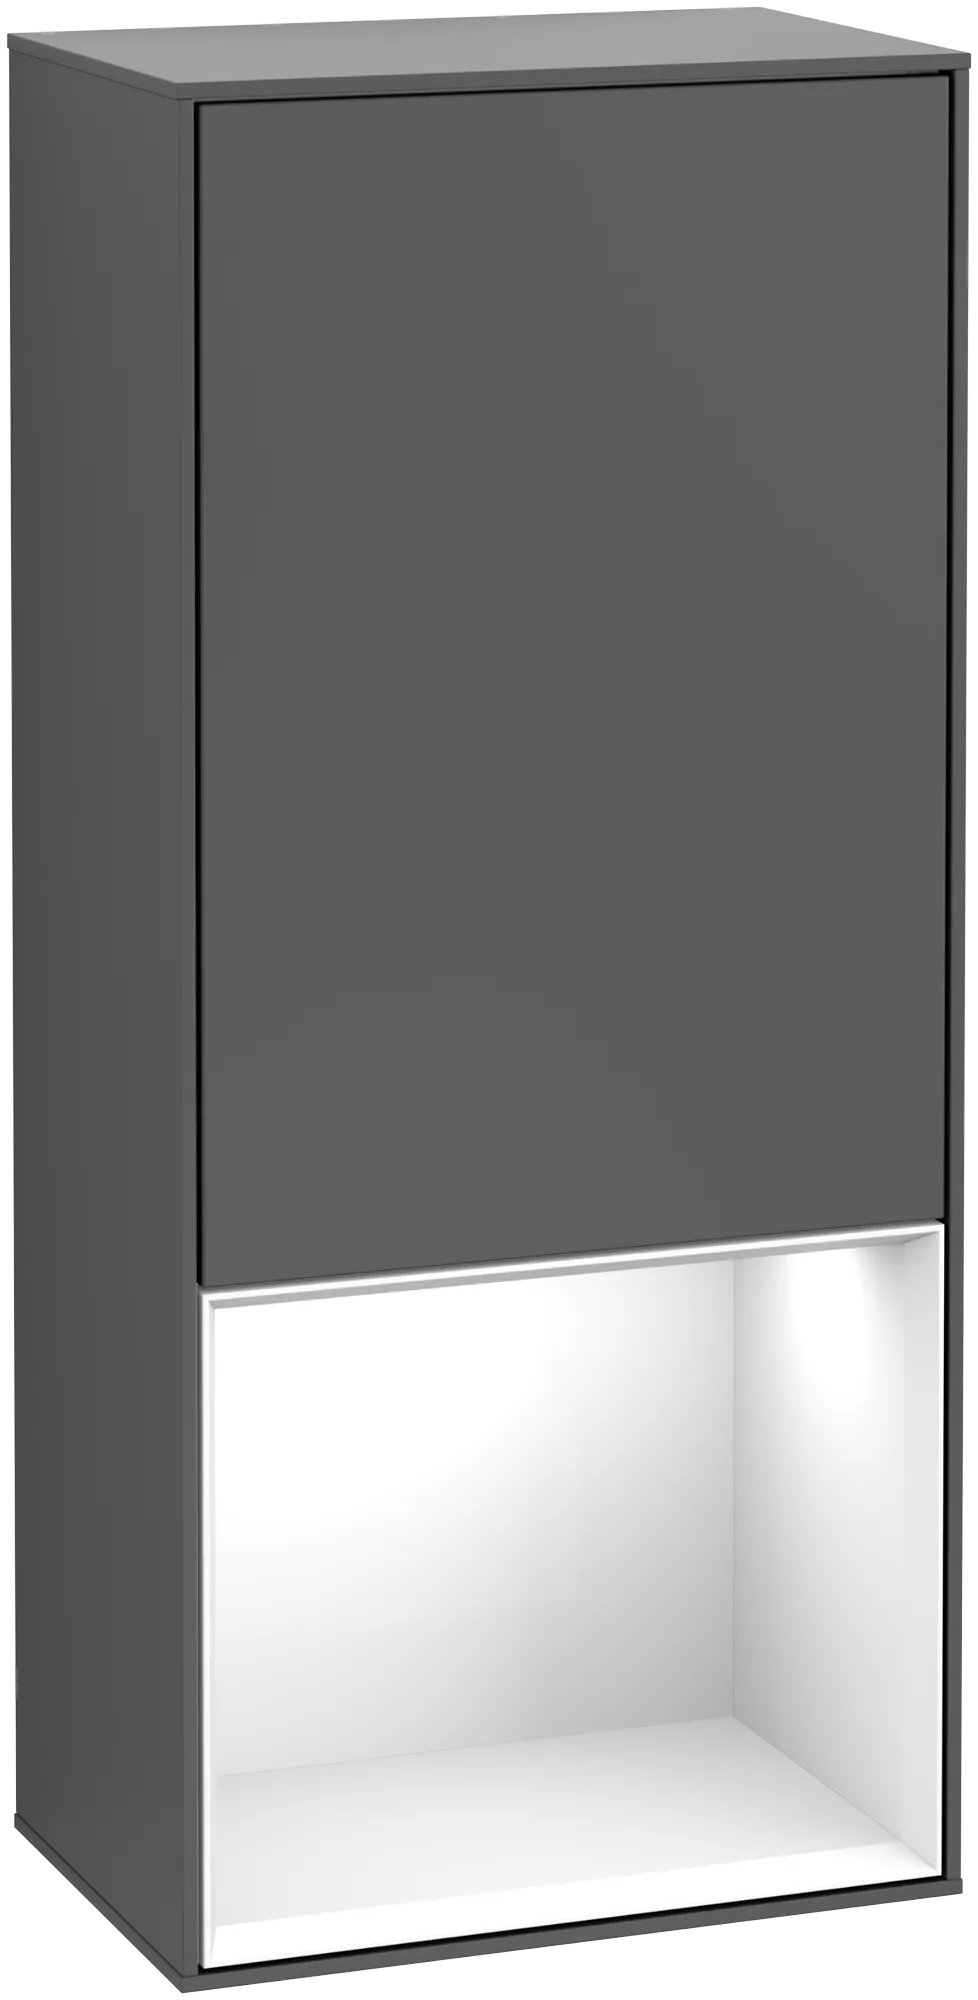 Bild von VILLEROY BOCH Finion Seitenschrank, mit Beleuchtung, 1 Tür, 418 x 936 x 270 mm, Anthracite Matt Lacquer / Glossy White Lacquer #G550GFGK